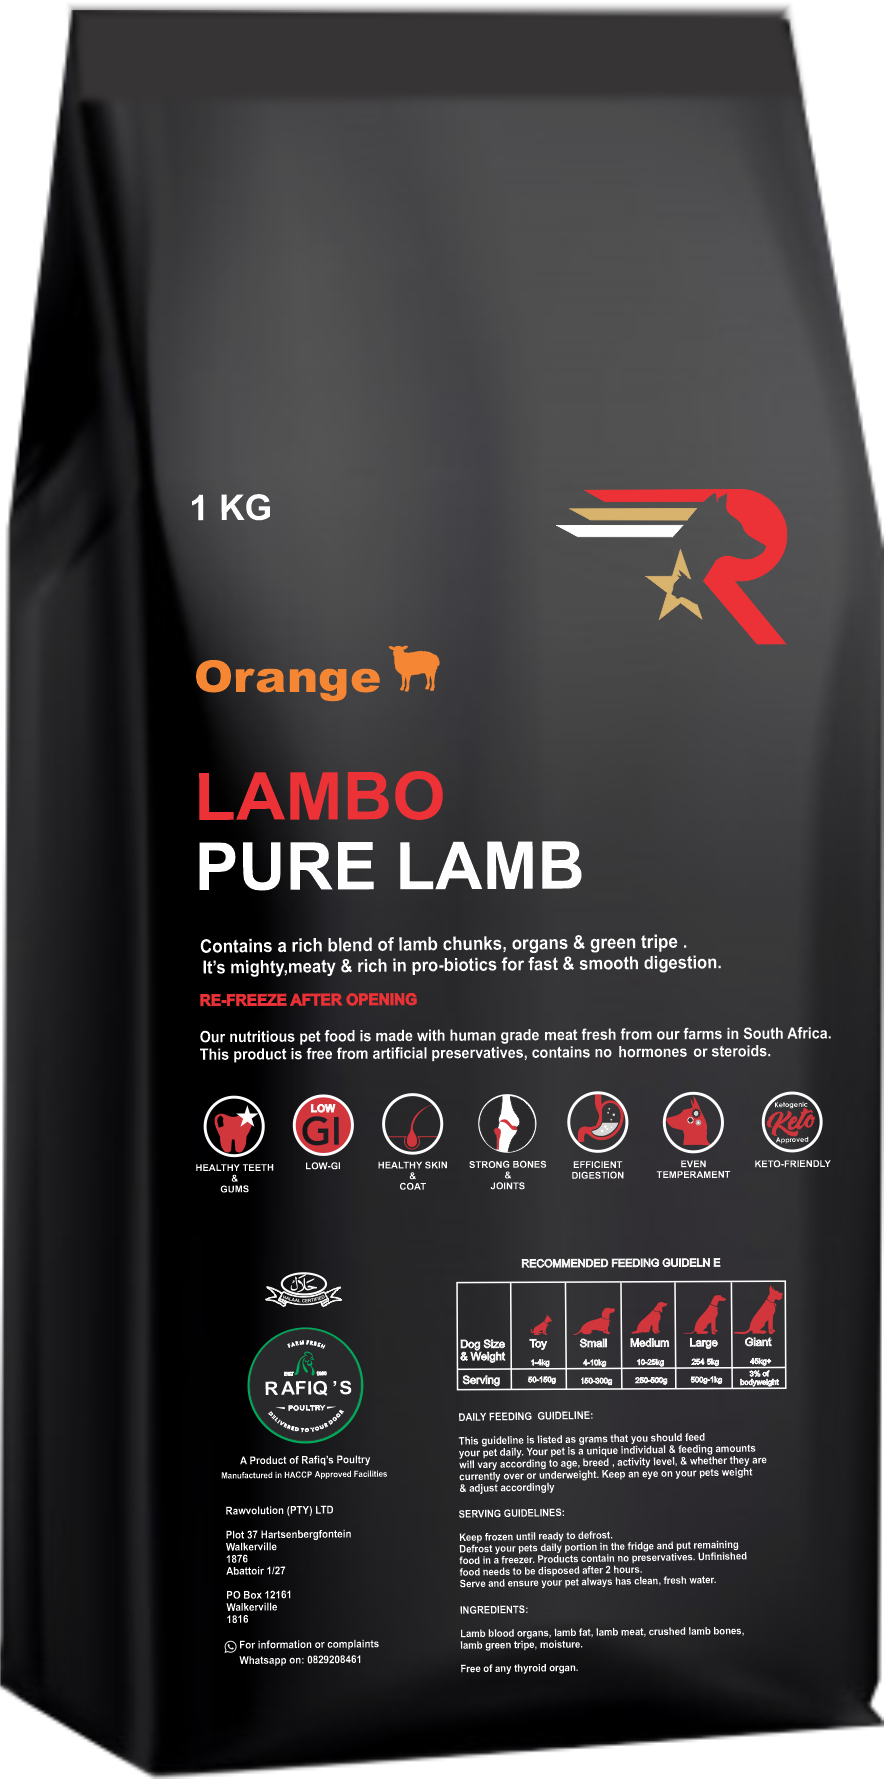 Lambo - Pure Lamb